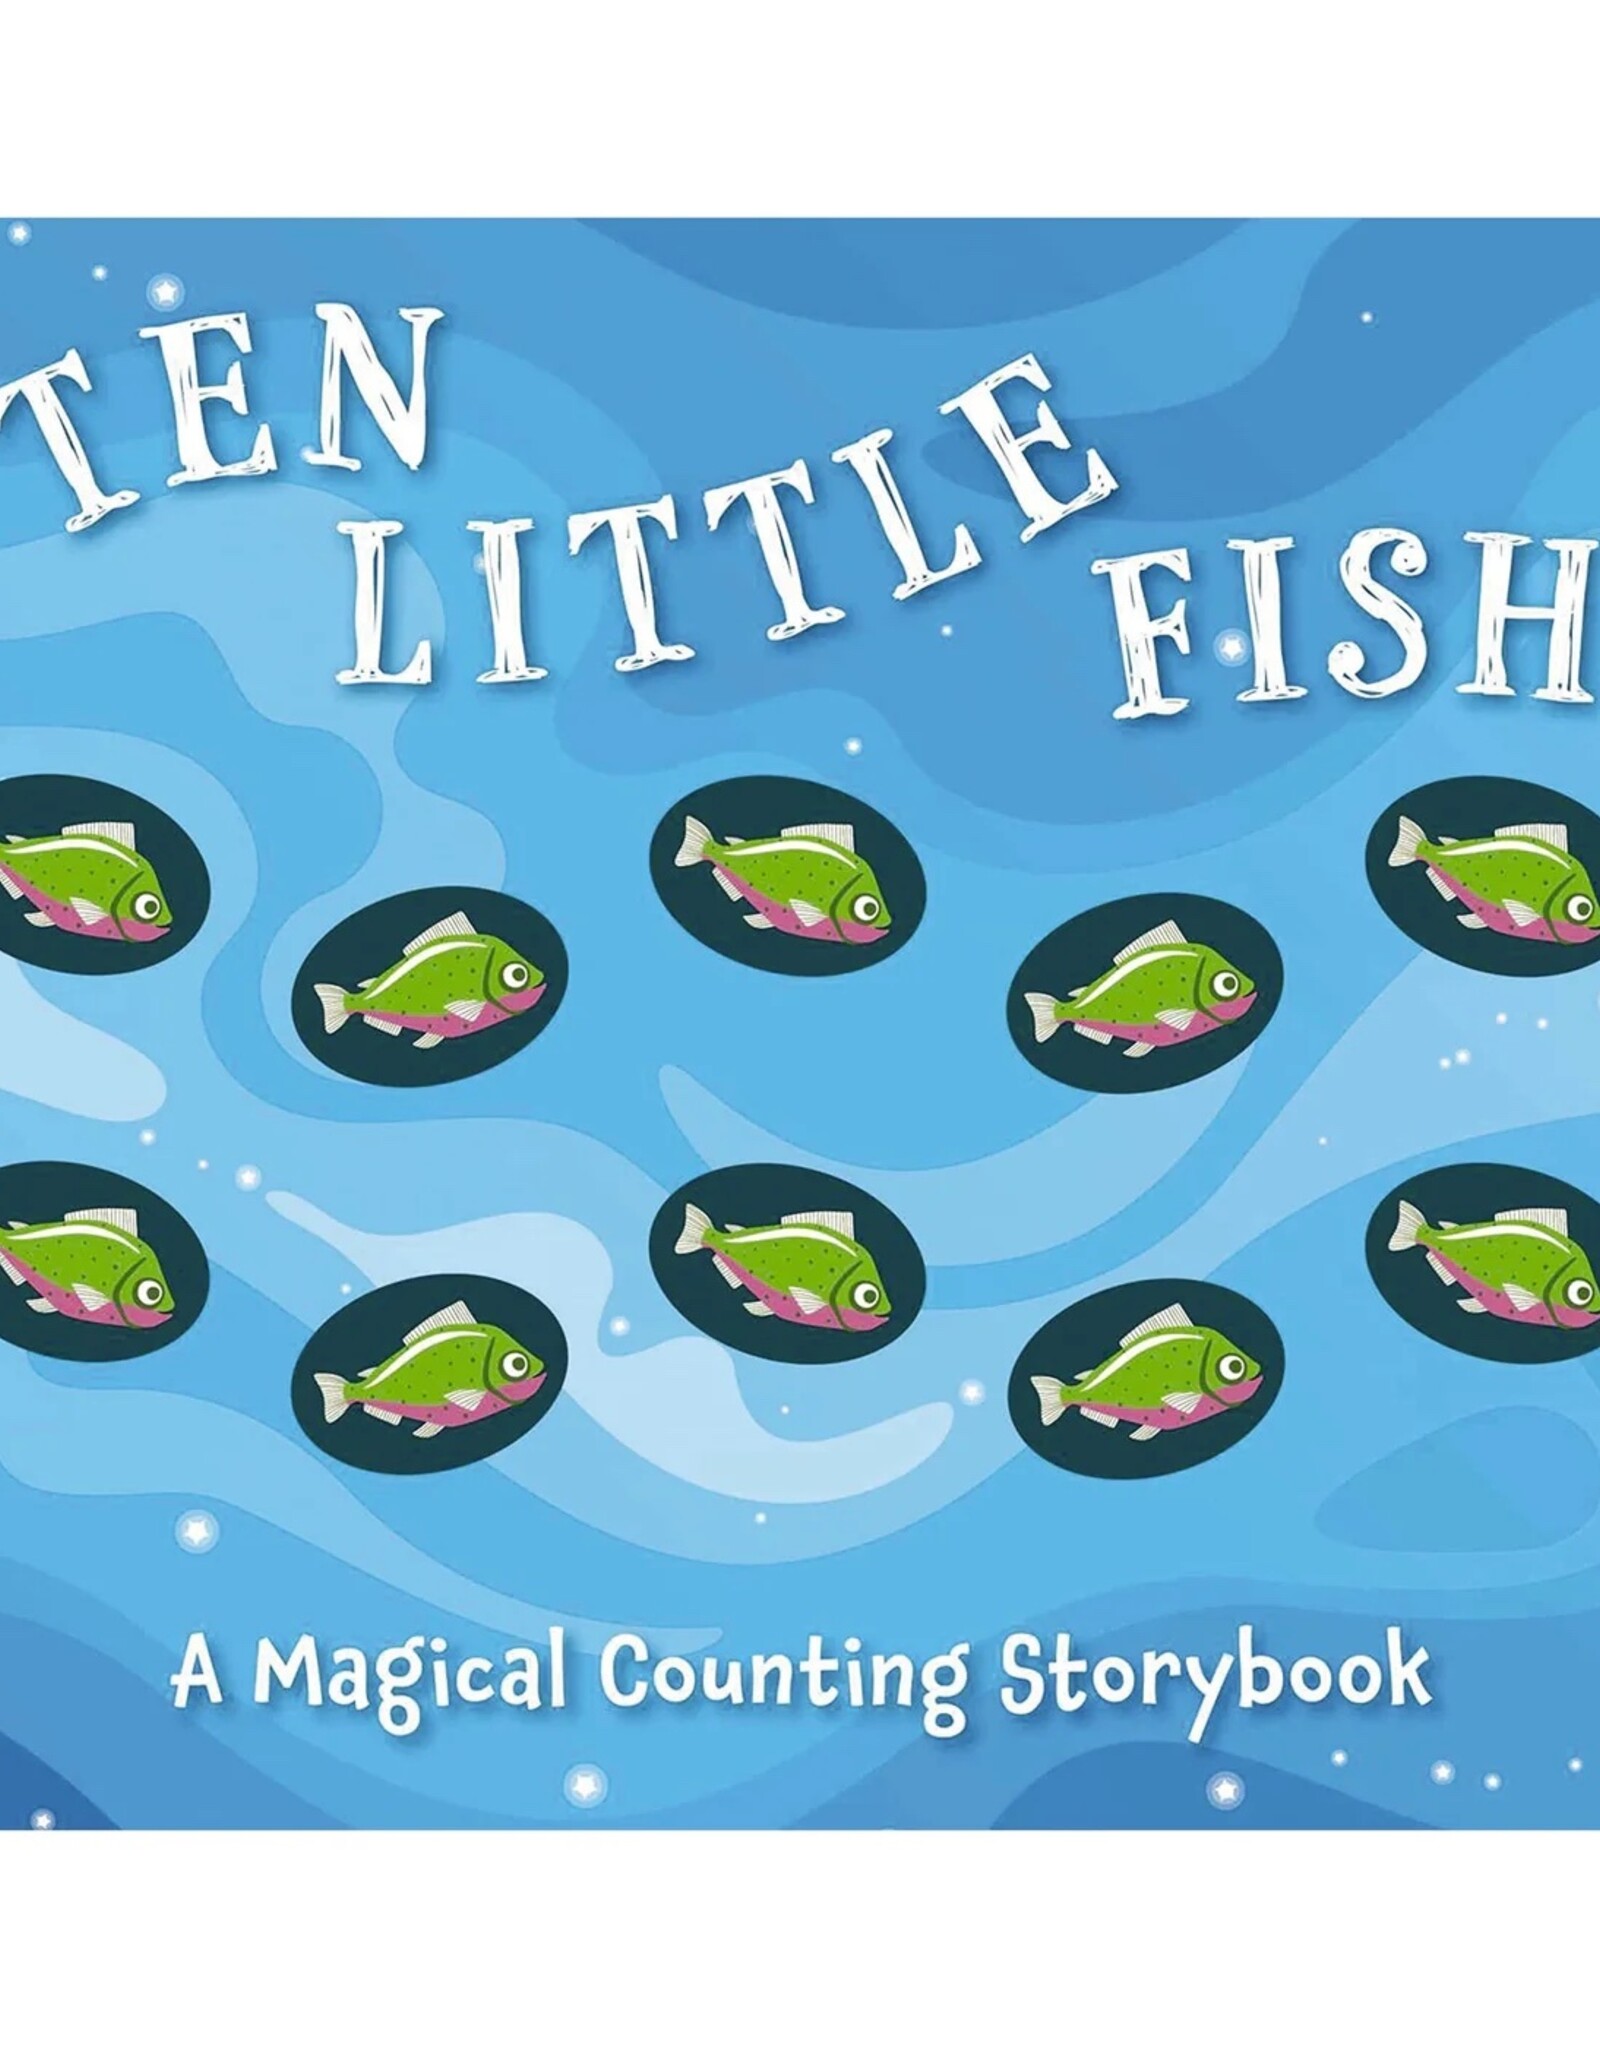 Harper Collins Publishing Ten Little Fish